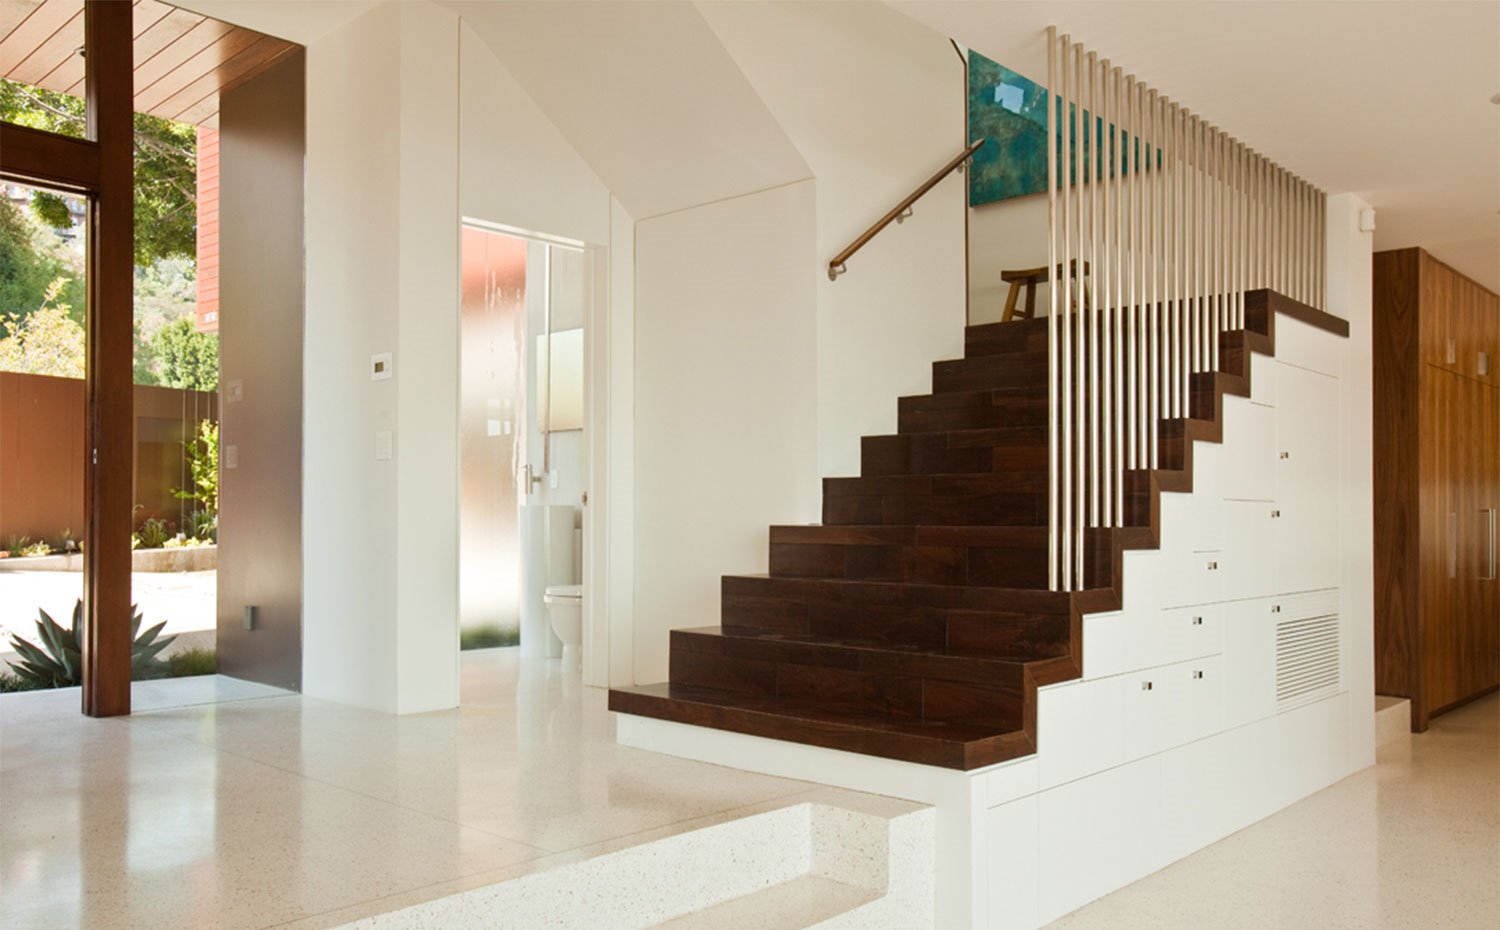 Escaleras revestidas de madera oscura en contraste con paredes en blanco